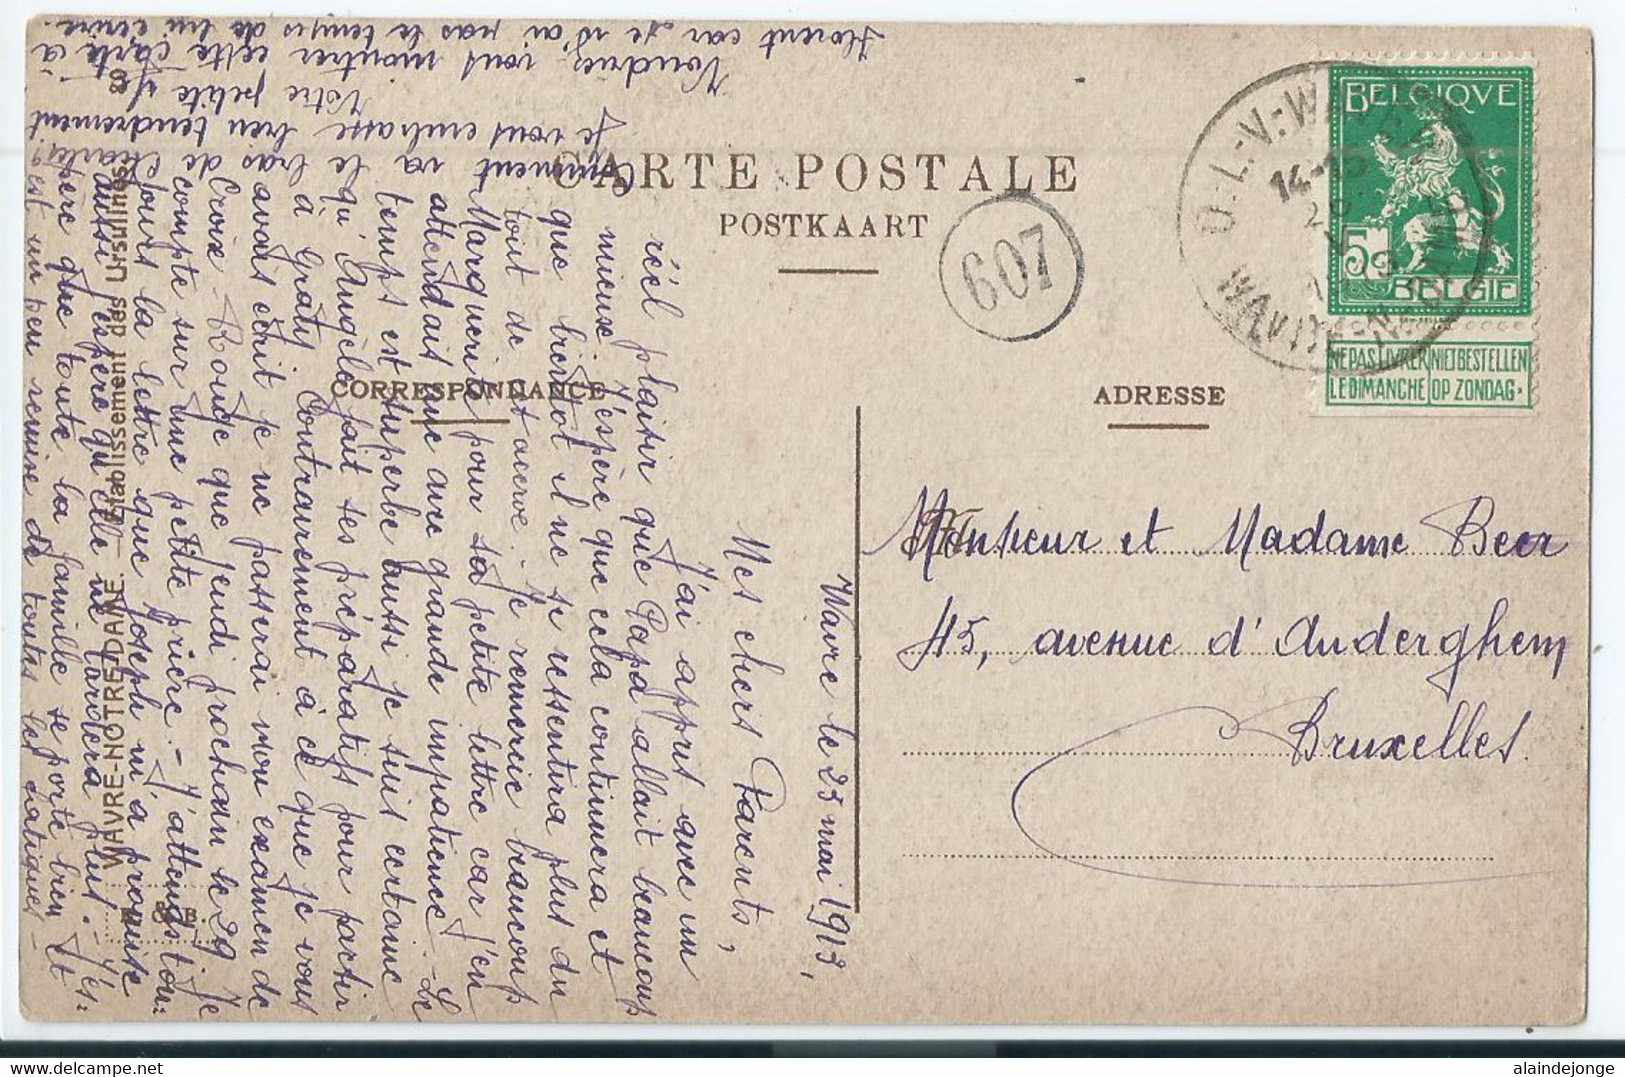 Wavre-Notre-Dame - Onze-Lieve-Vrouw-Waver - Institut Des Ursulines - Dortoir Des Sacrés Coeurs - 1913 - Sint-Katelijne-Waver